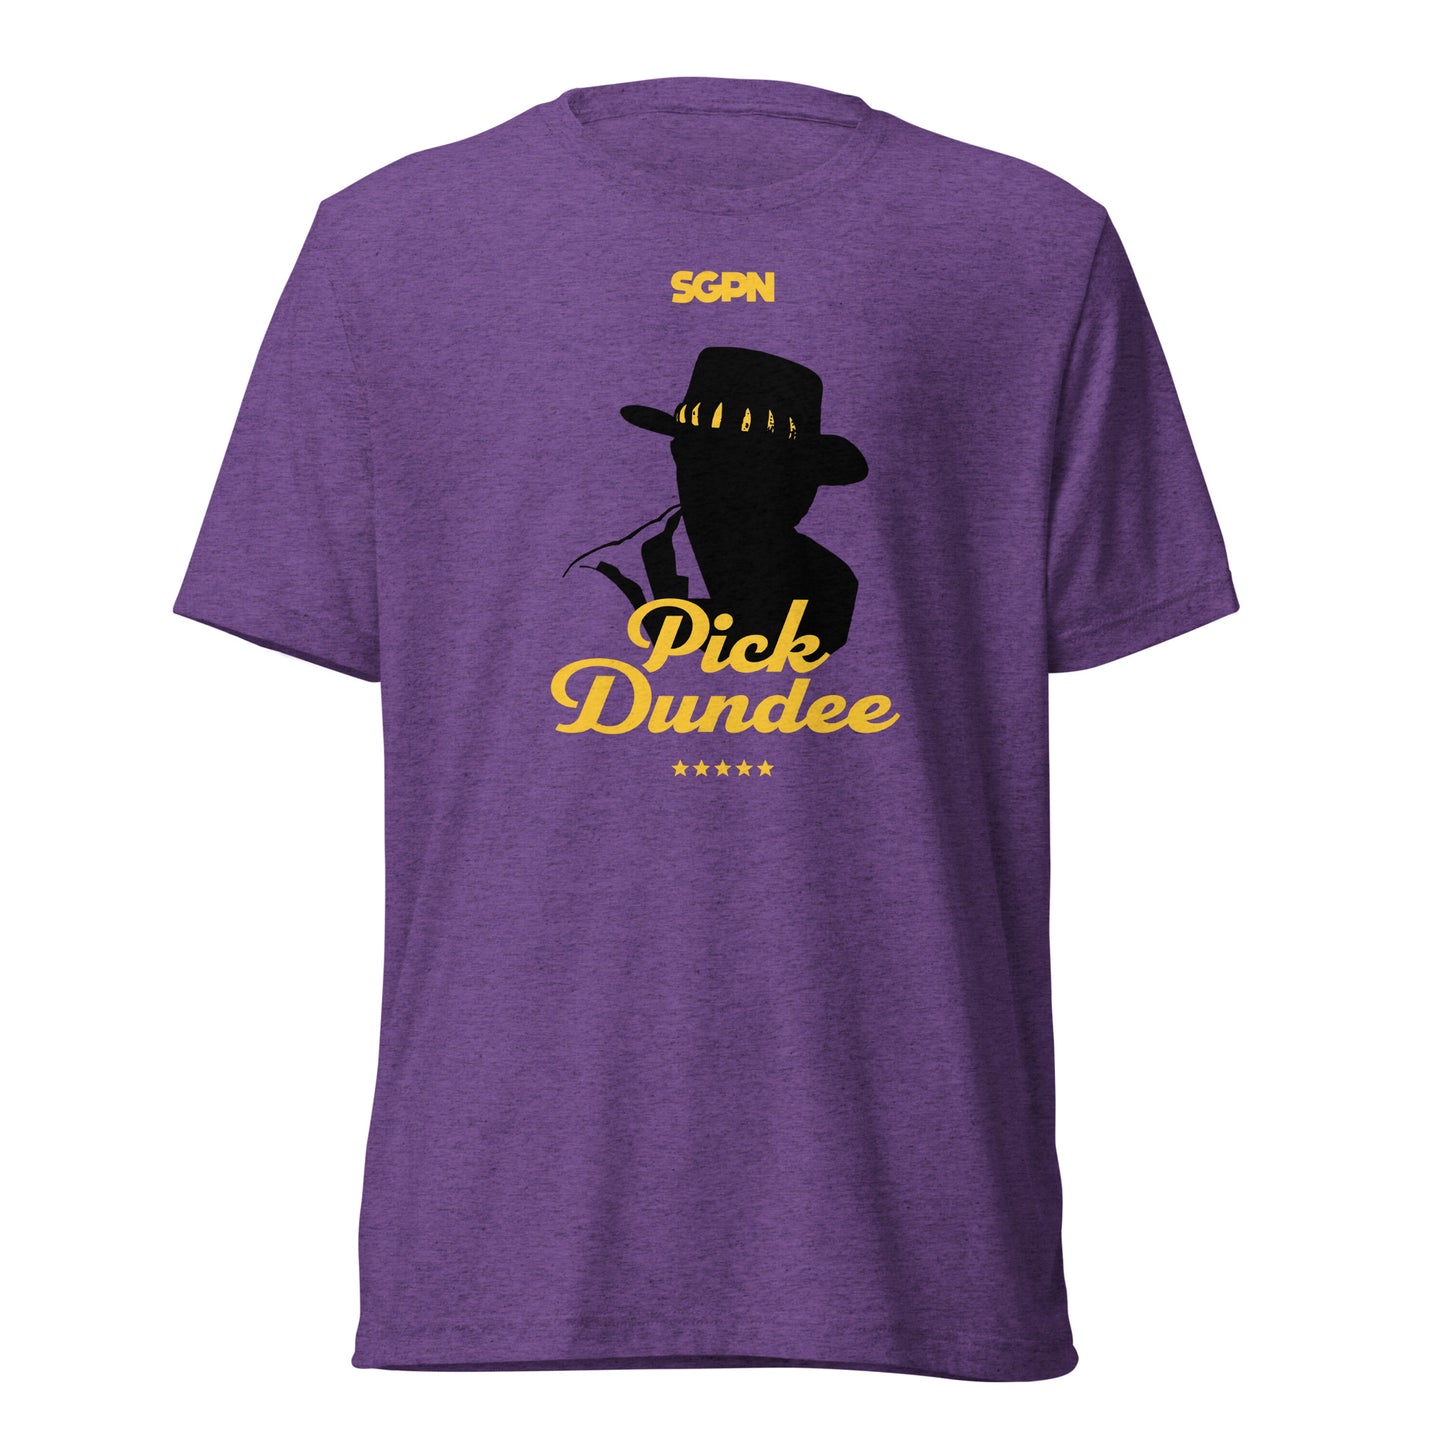 Pick Dundee - Short sleeve t-shirt  - Alt